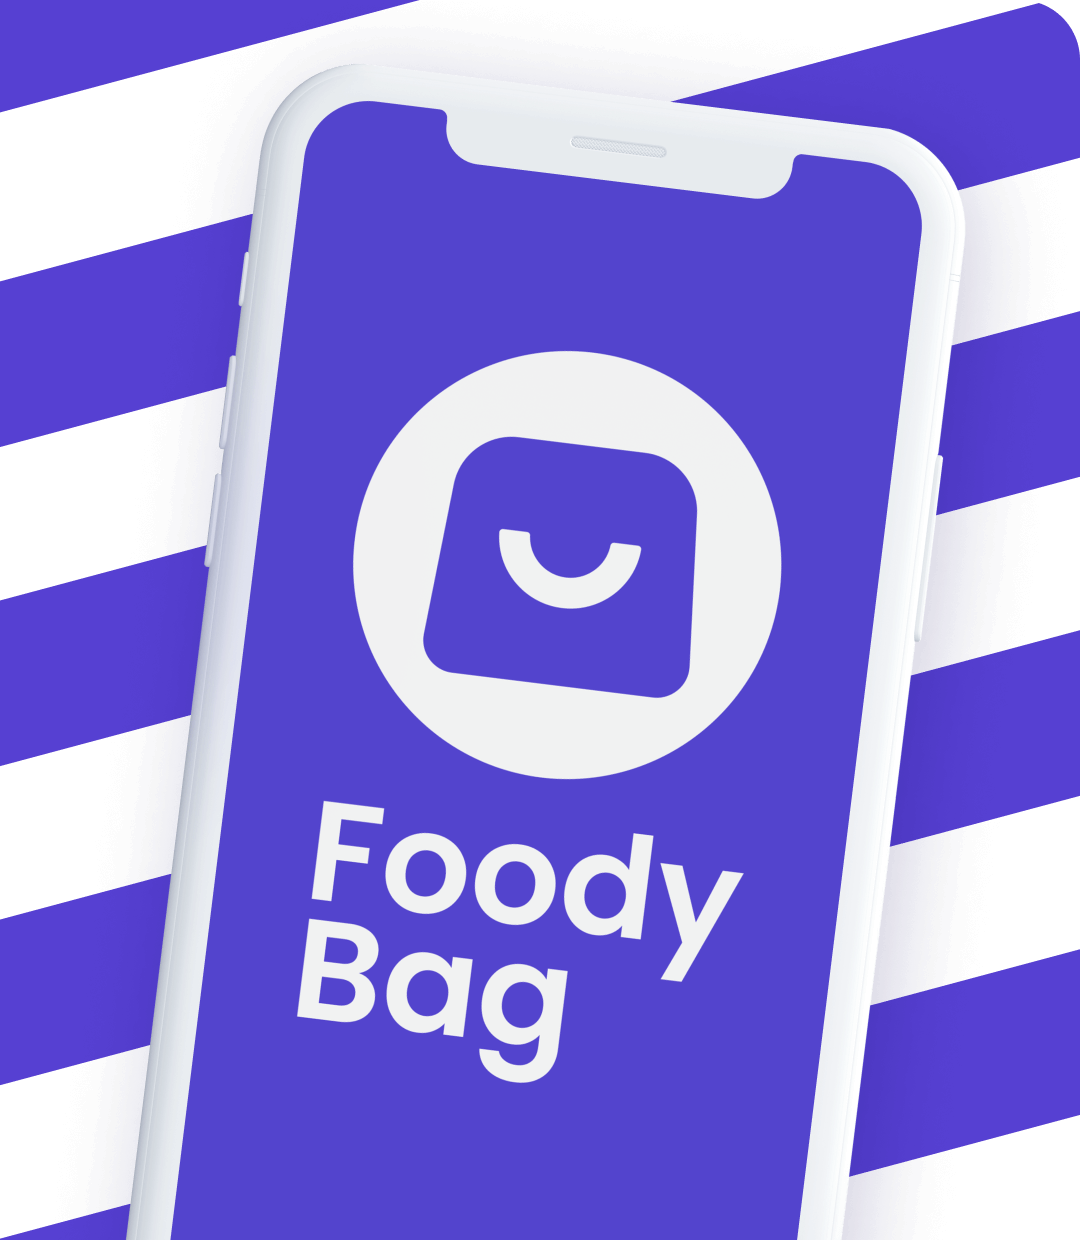 Foody Bag app